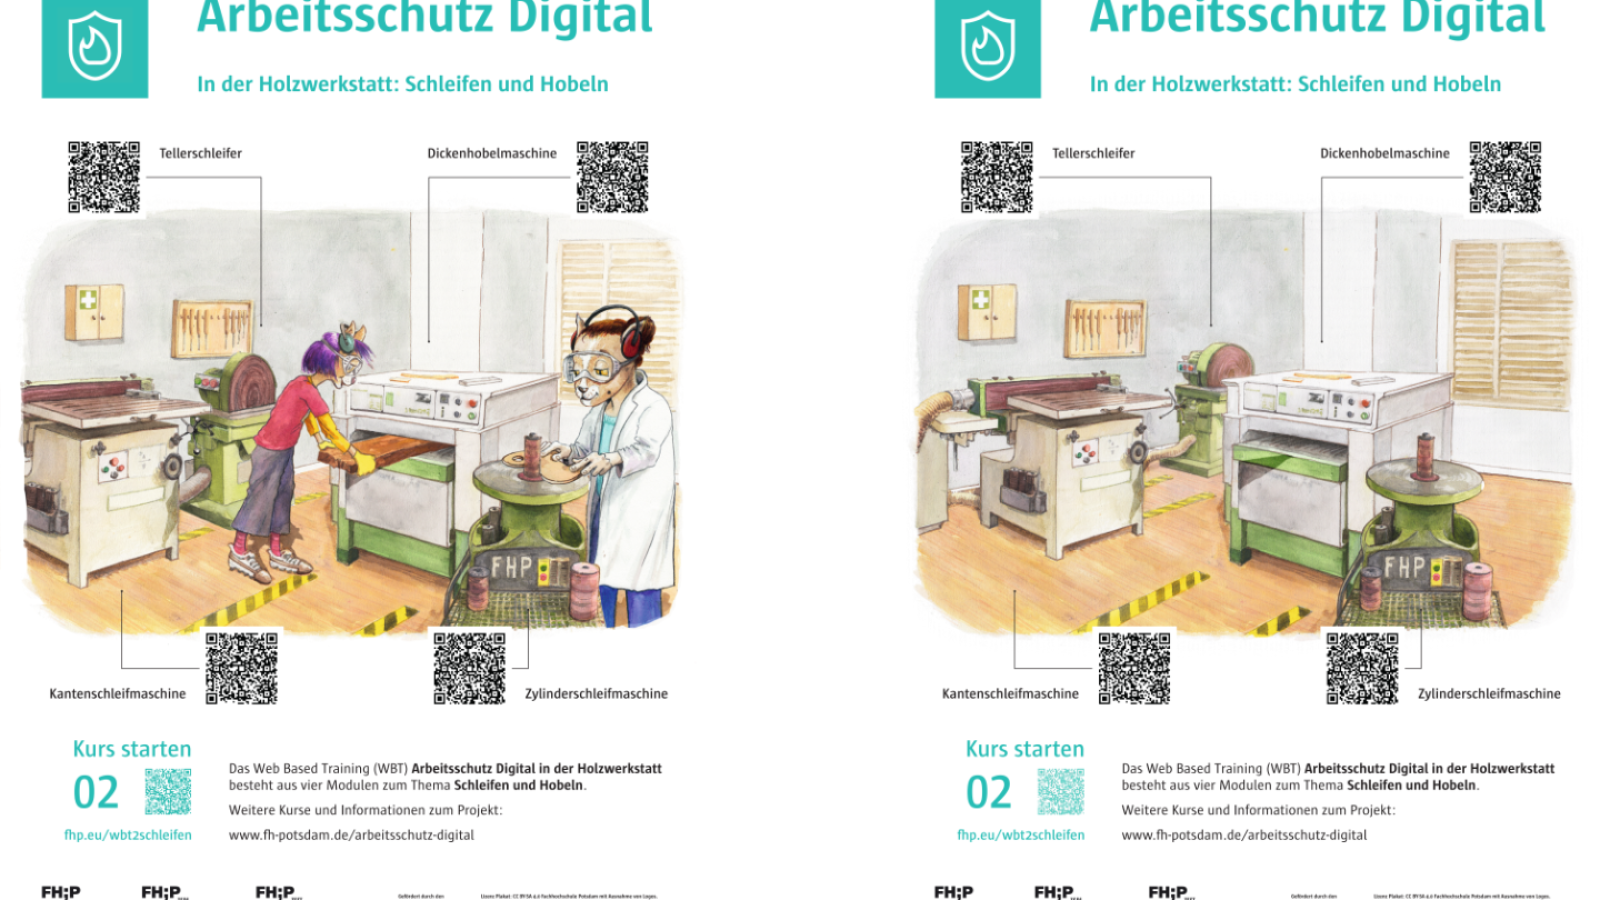 Gegenberstellung der 2 interaktiven Plakatversionen zu den Arbeitschutzthemen Schleifen und Hobeln.